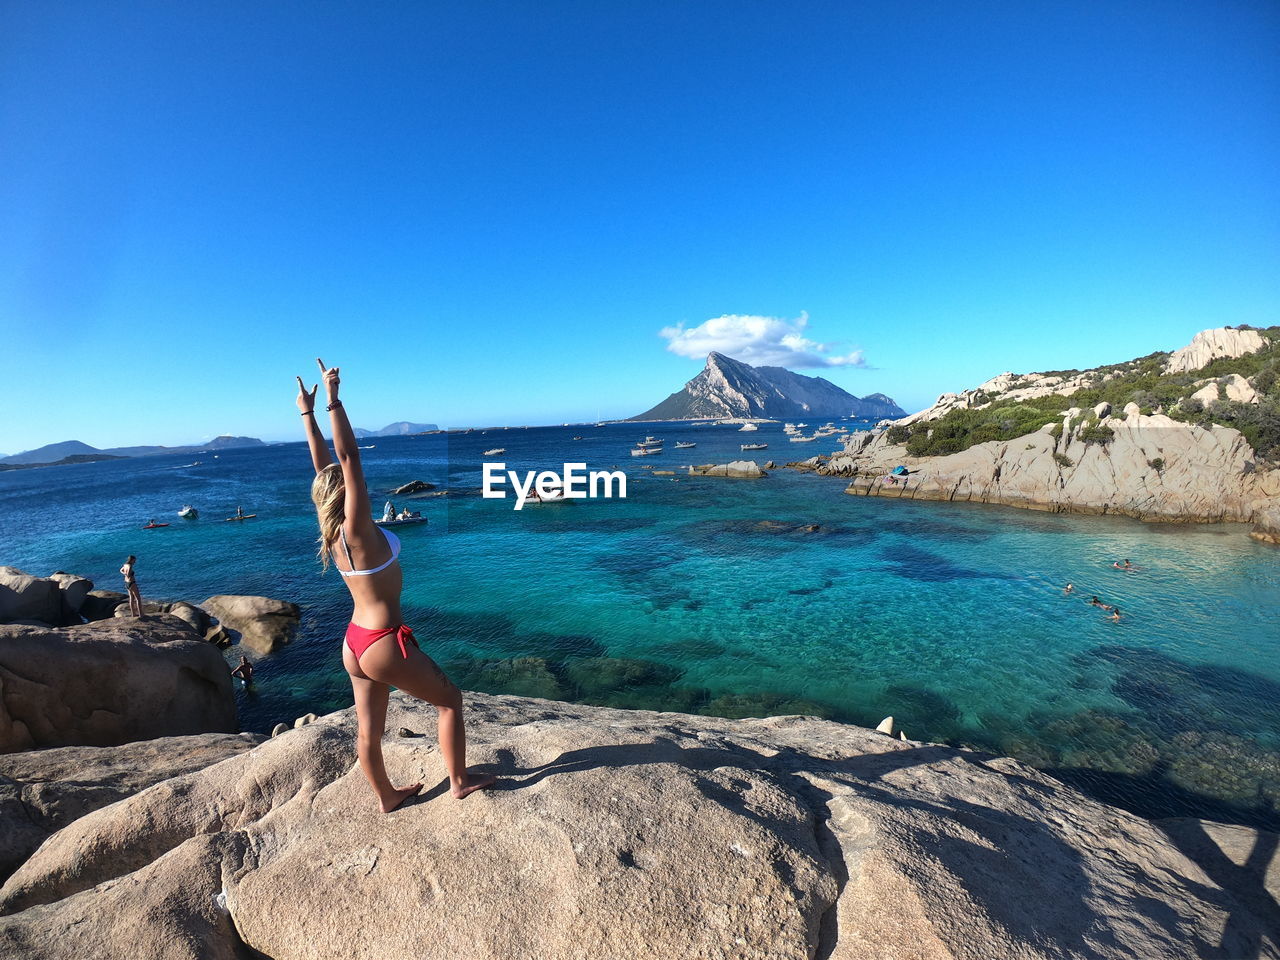 Woman in bikini standing on rock by sea against blue sky